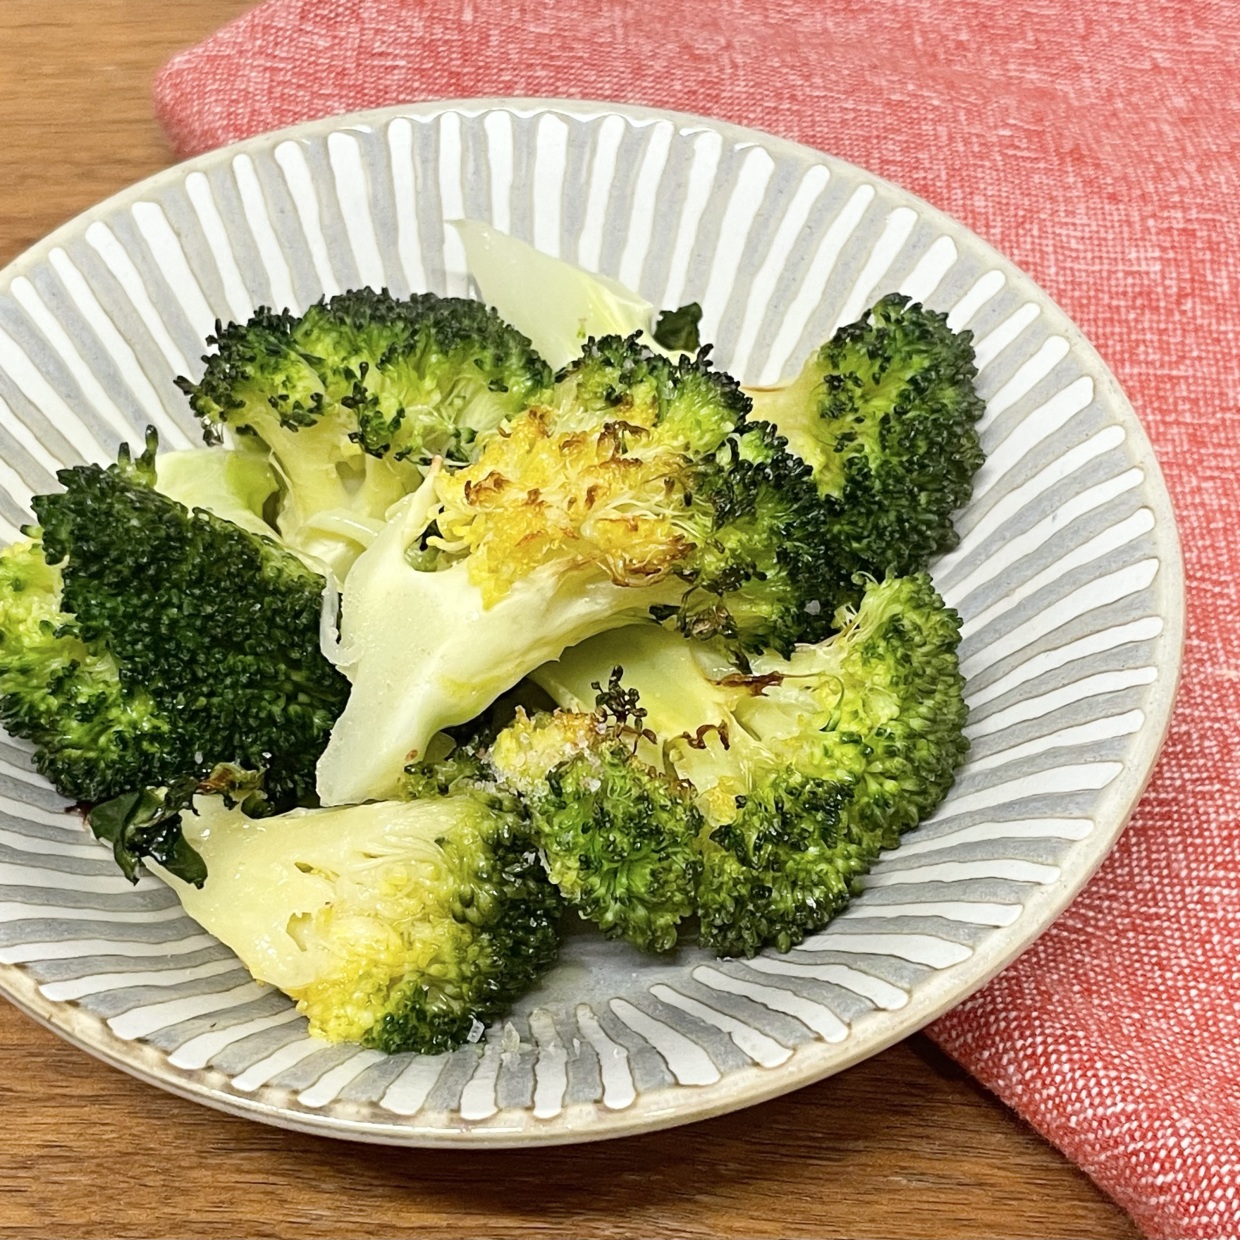  「ブロッコリー」の栄養をそのまま食べたい！素材の味わいを楽しむ簡単調理法 